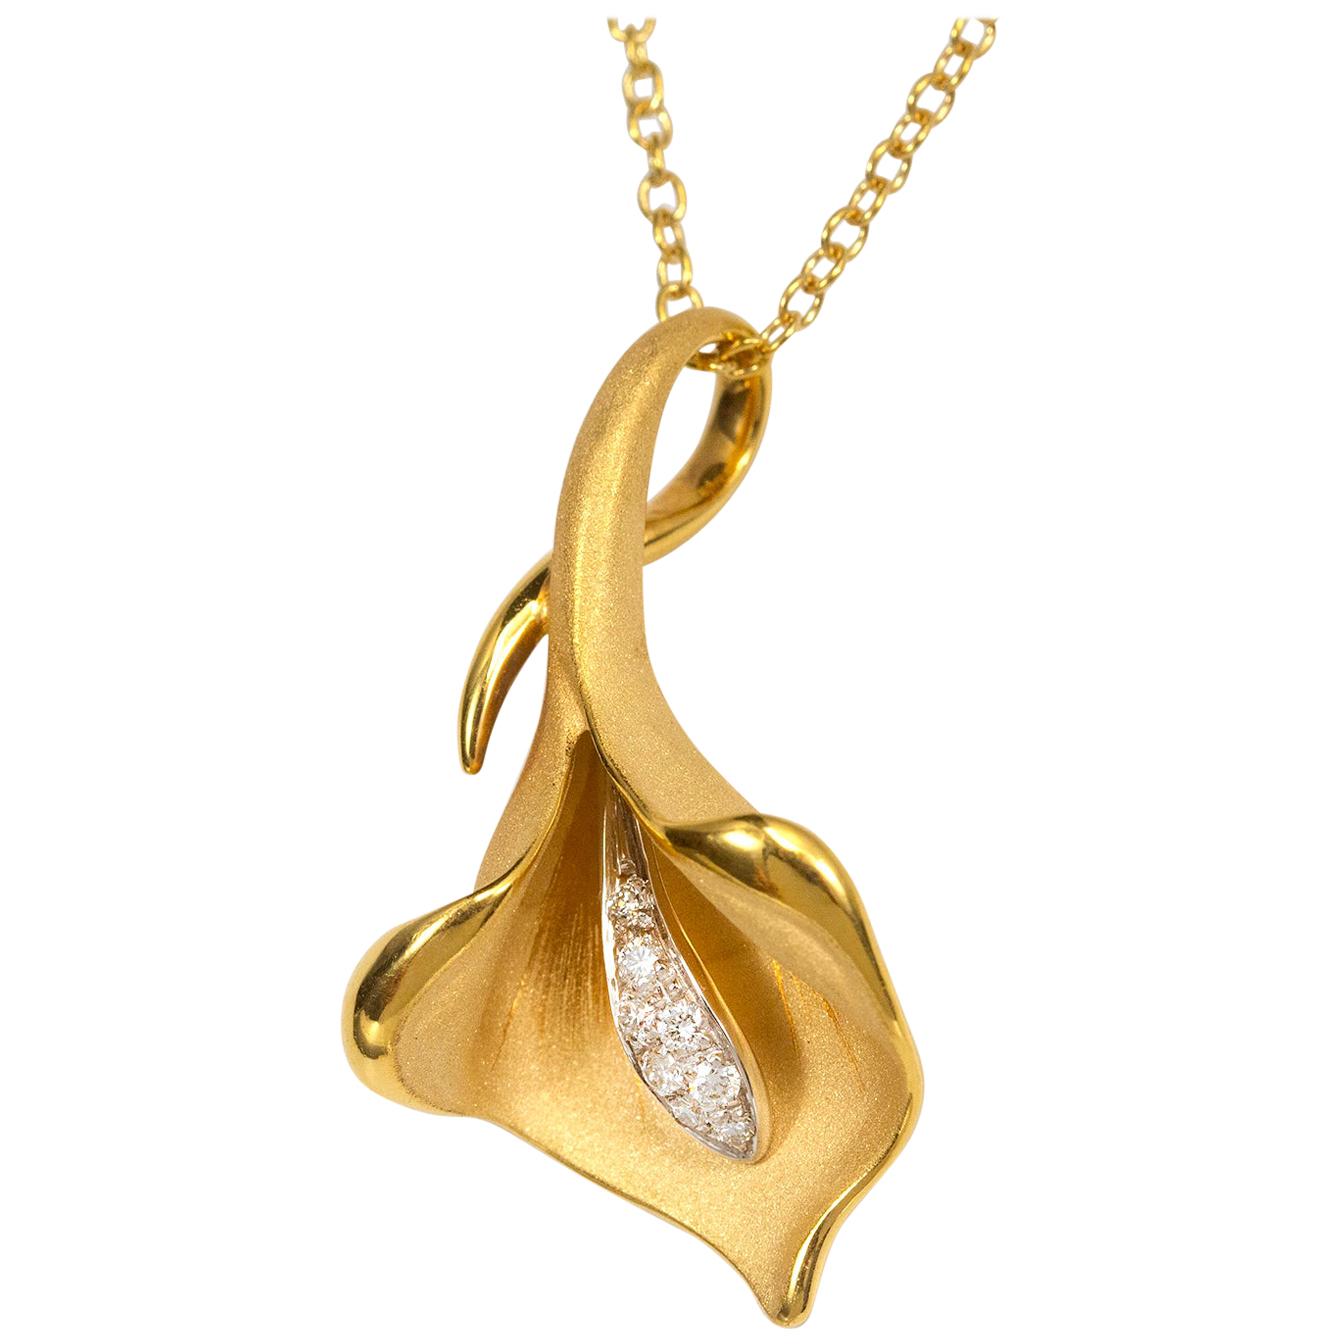 Annamaria Cammilli "Calla" Pendant Necklace with Diamonds in 18 Karat Gold